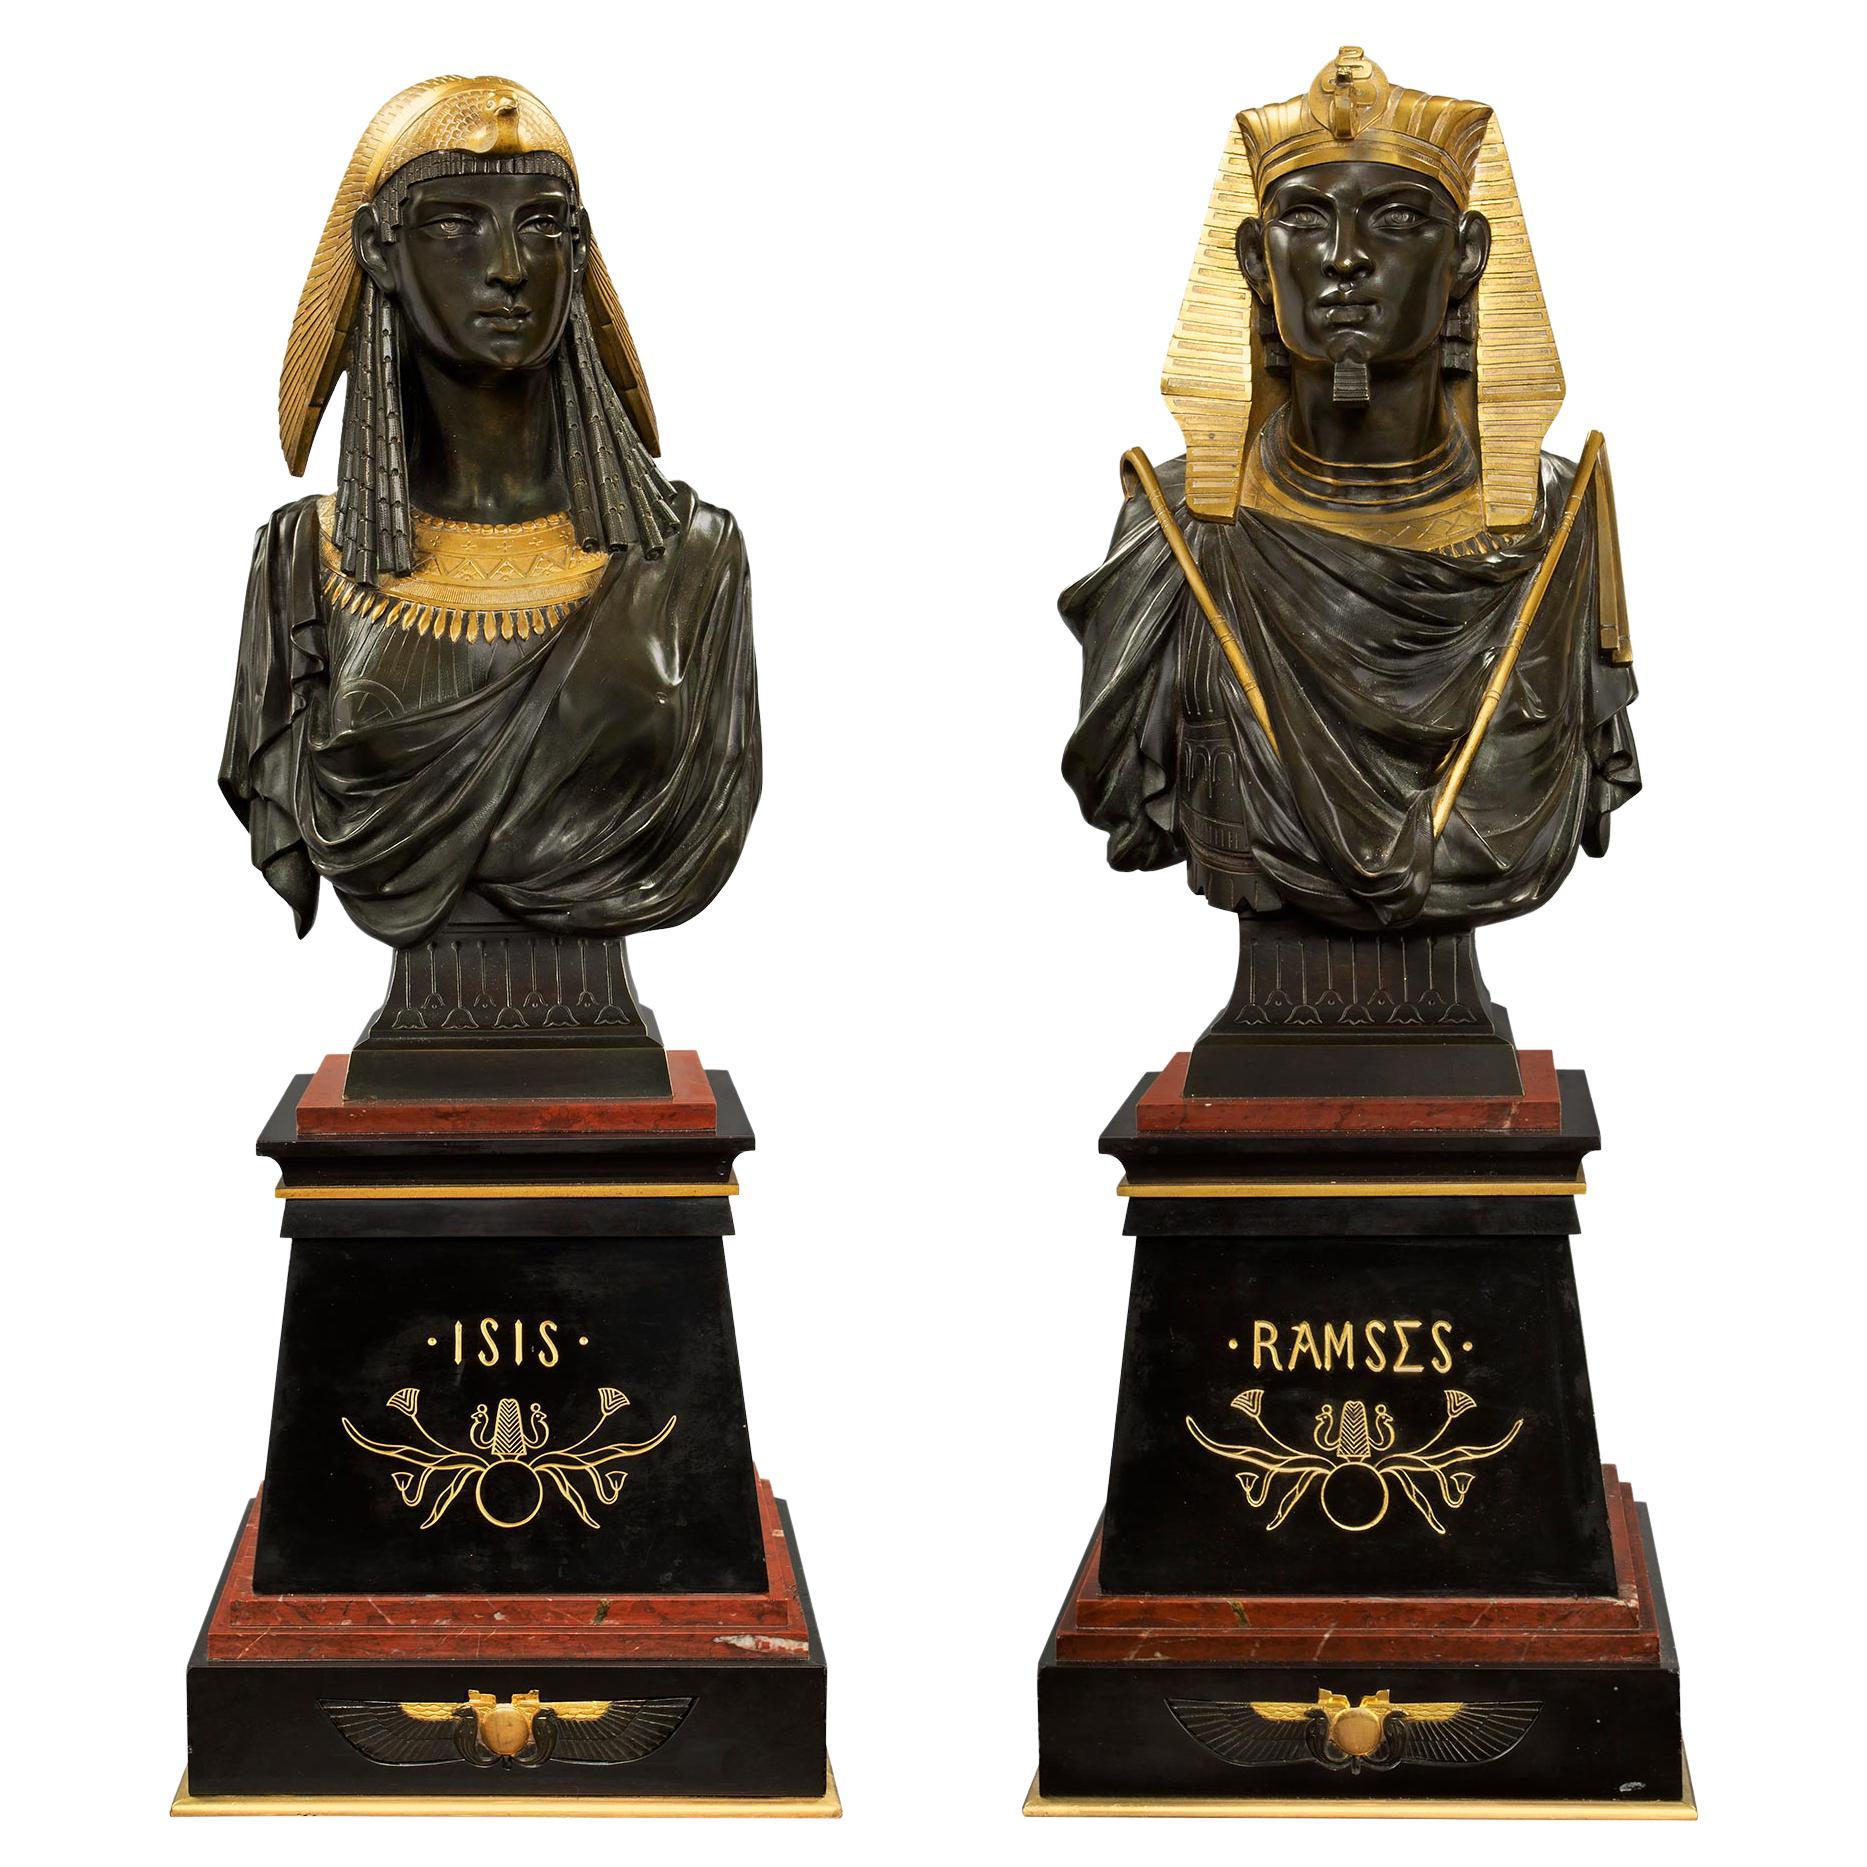 Paire de bustes de Ramsès et d'Isis de style néo-égyptien du 19ème siècle français